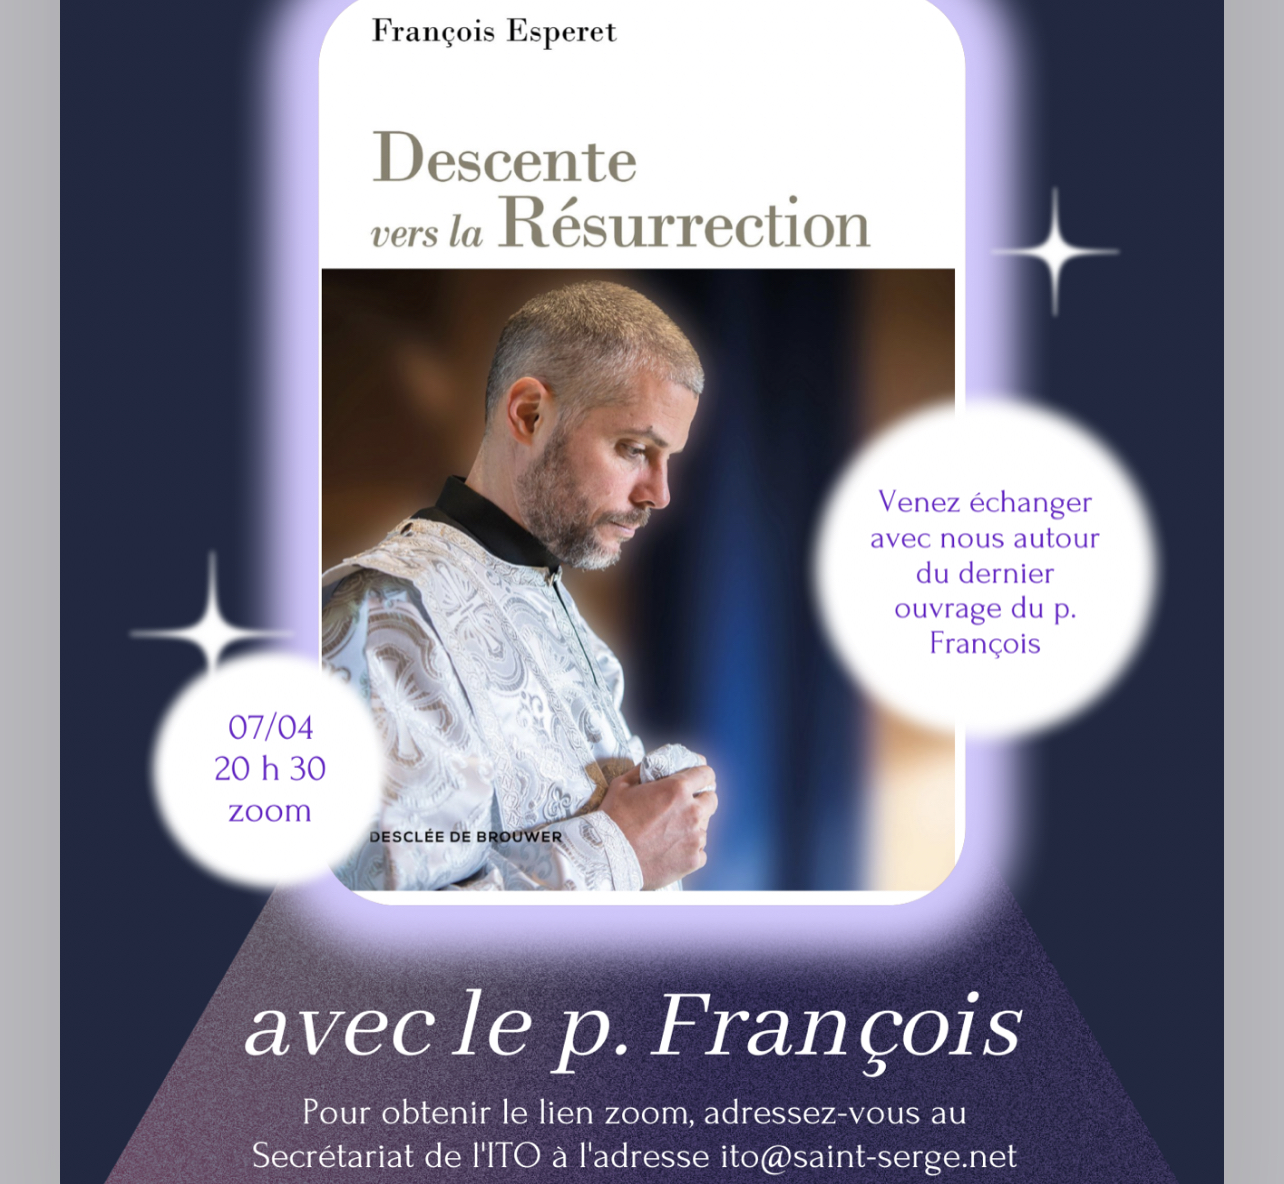 Soirée d’échange autour du dernier livre du p. François Esperet, Descente vers la Résurrection, le vendredi 7 avril à 20h30